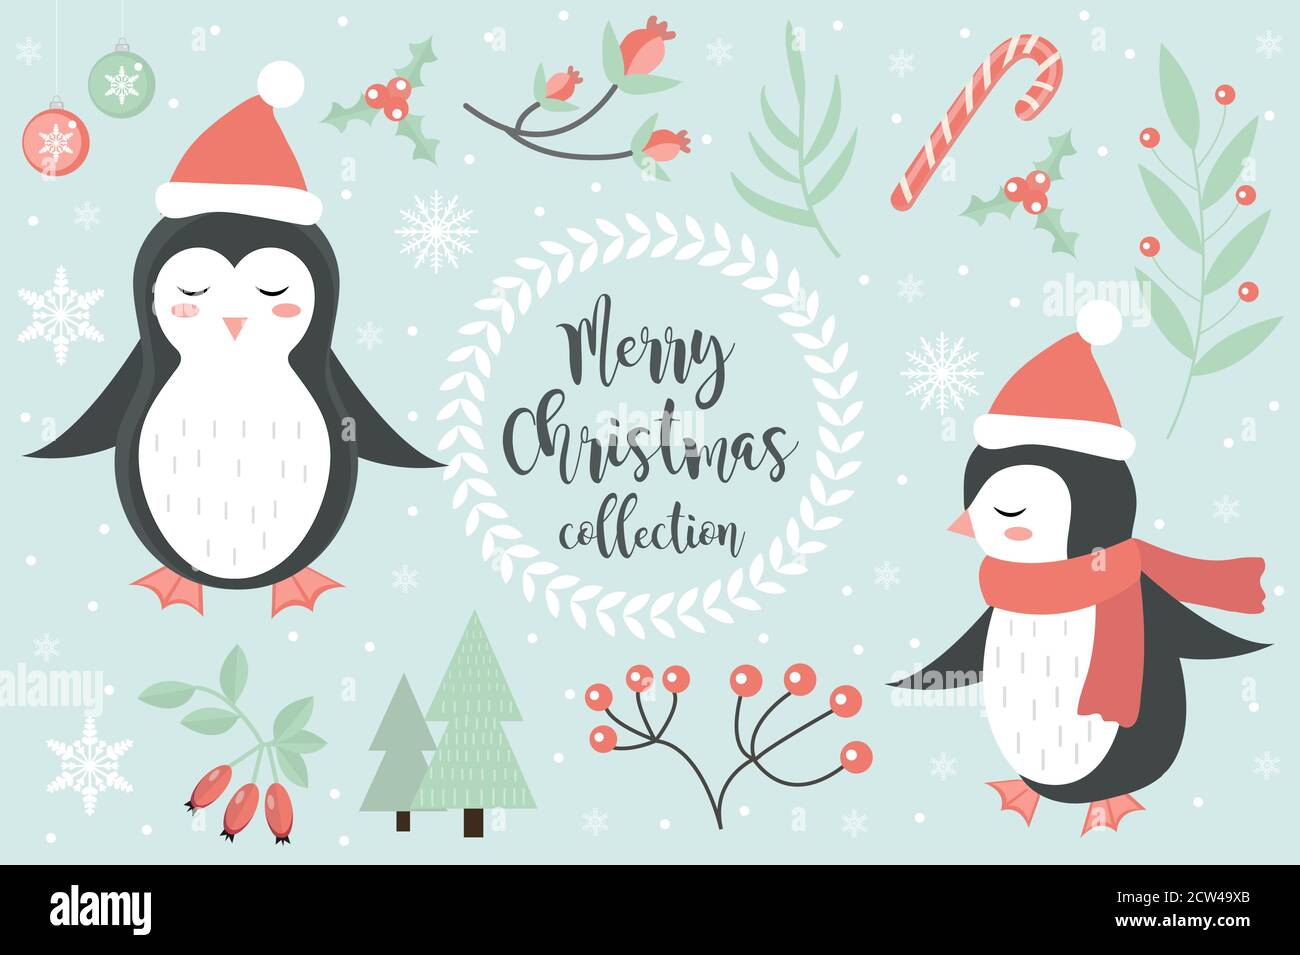 Joli pingouin dans la forêt d'hiver ensemble d'objets. Collection d'éléments de design avec flocons de neige et un sapin de Noël. Carte postale Joyeux noël. Vecteur Illustration de Vecteur